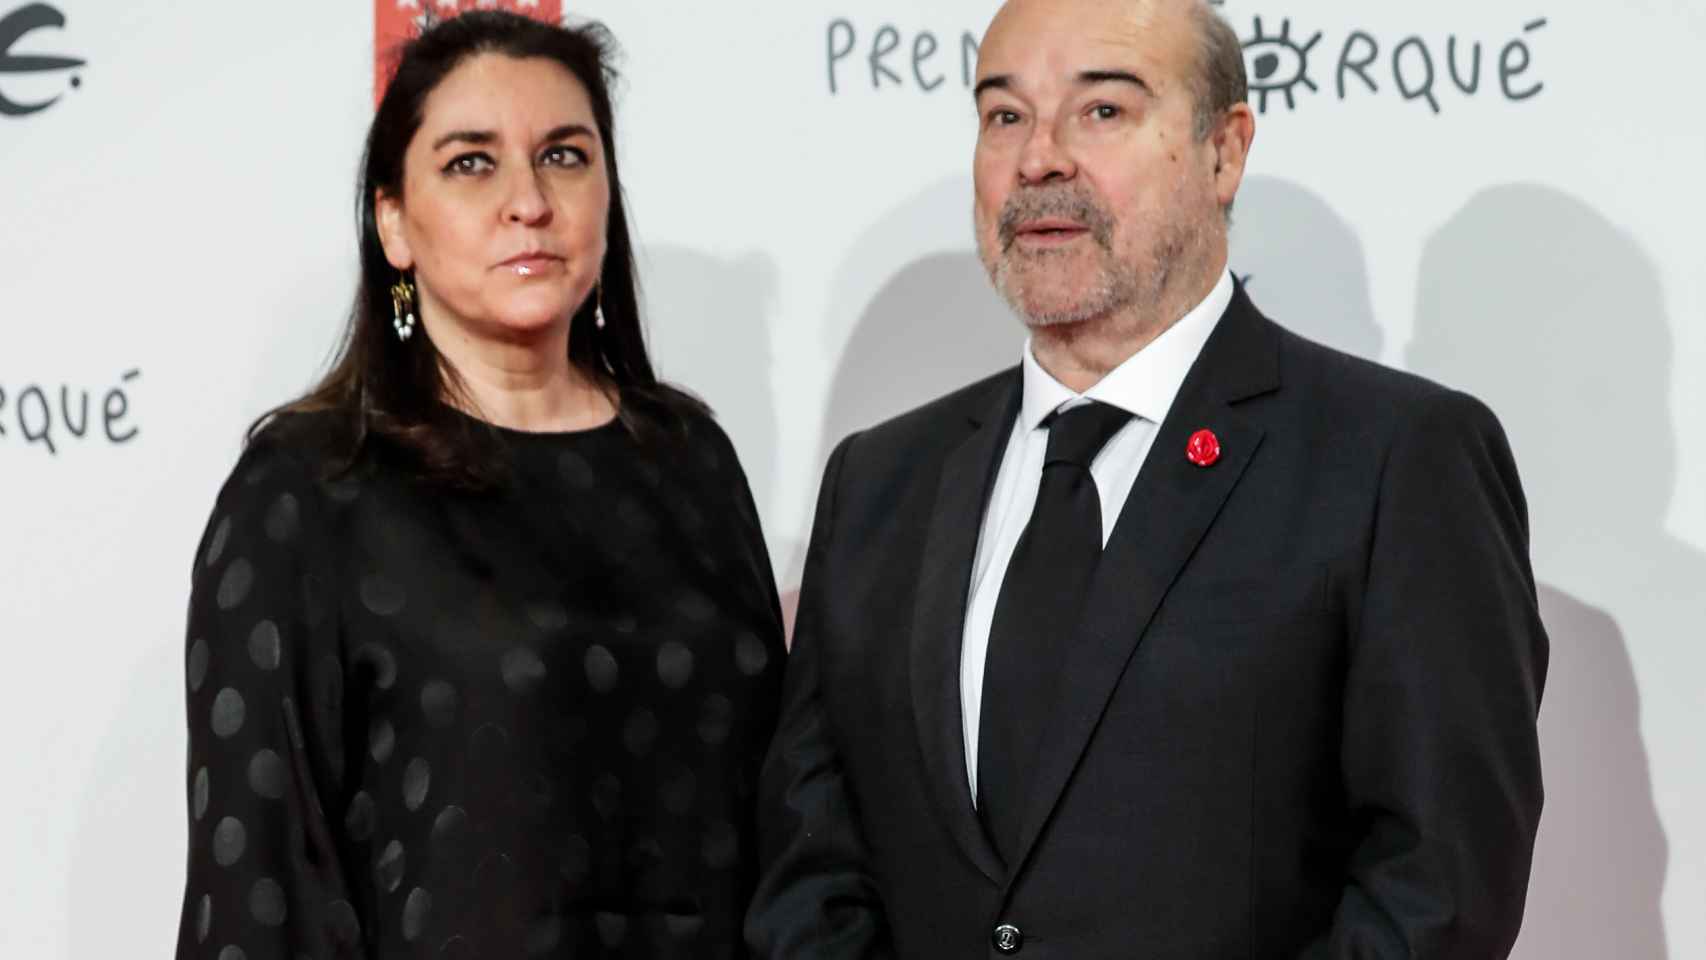 El director de cine Antonio Resines y su mujer, Ana Pérez-Lorente, en un evento público en enero de 2020.